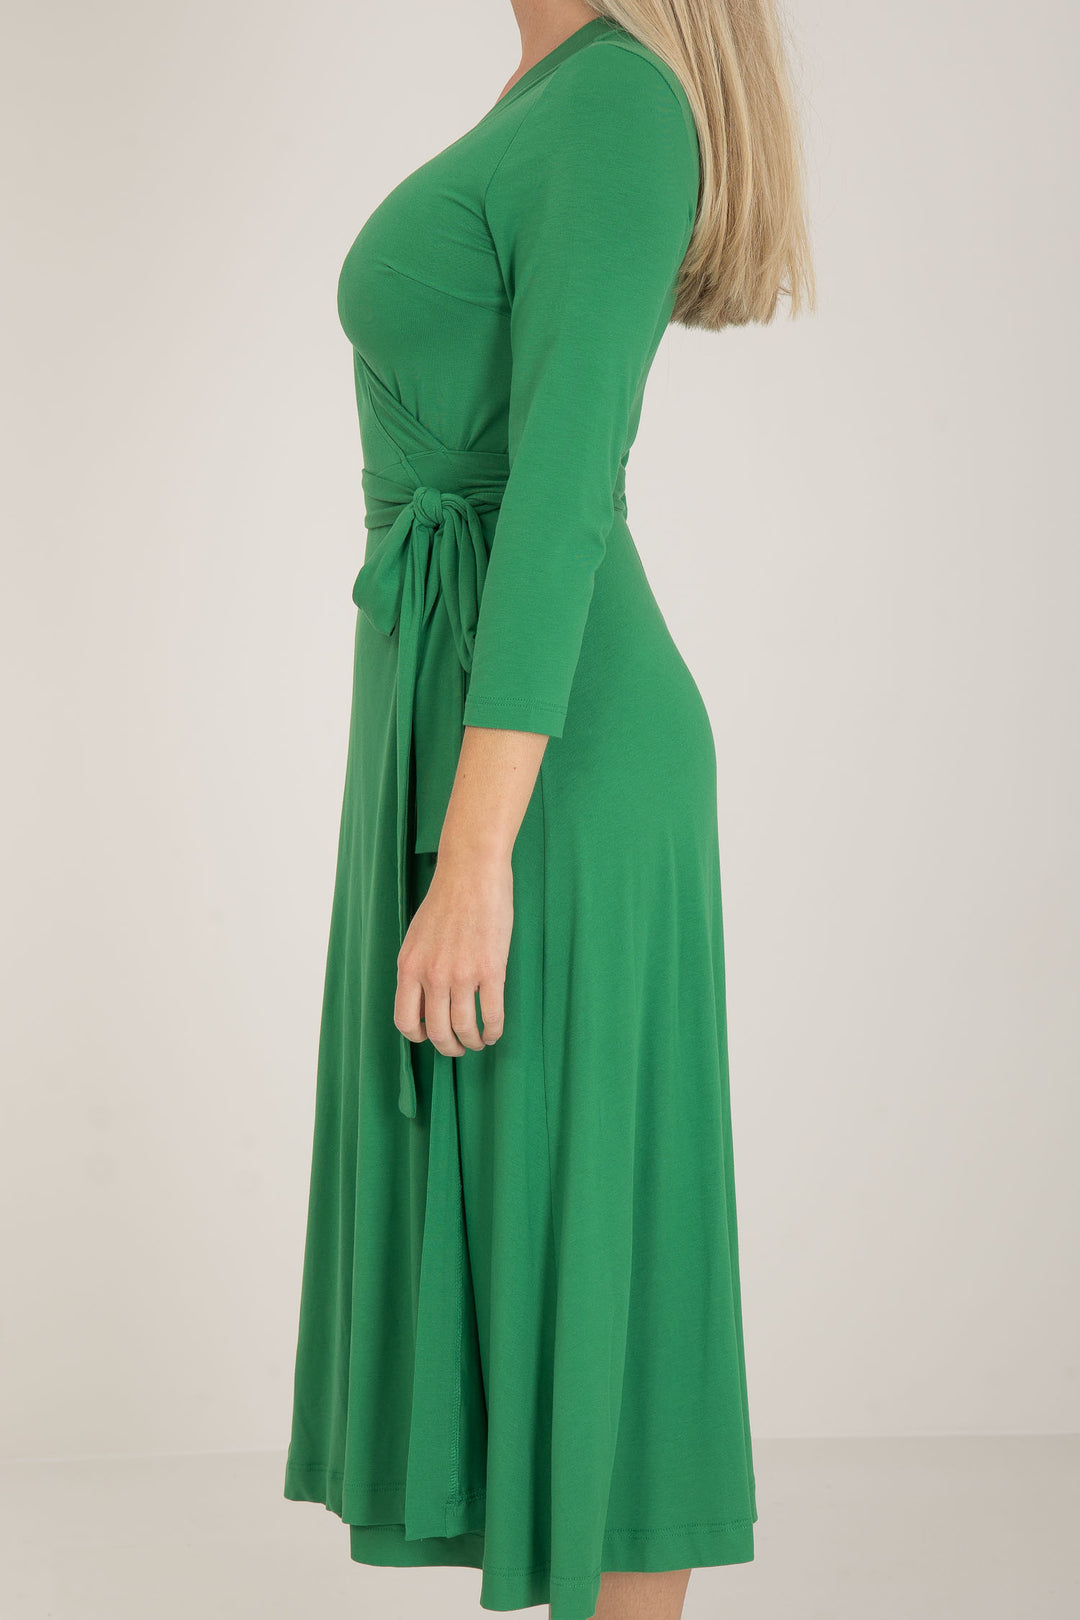 Bestie midi lenght wrap jersey dress - Green - Vadlång, grön omlottklänning i trikå